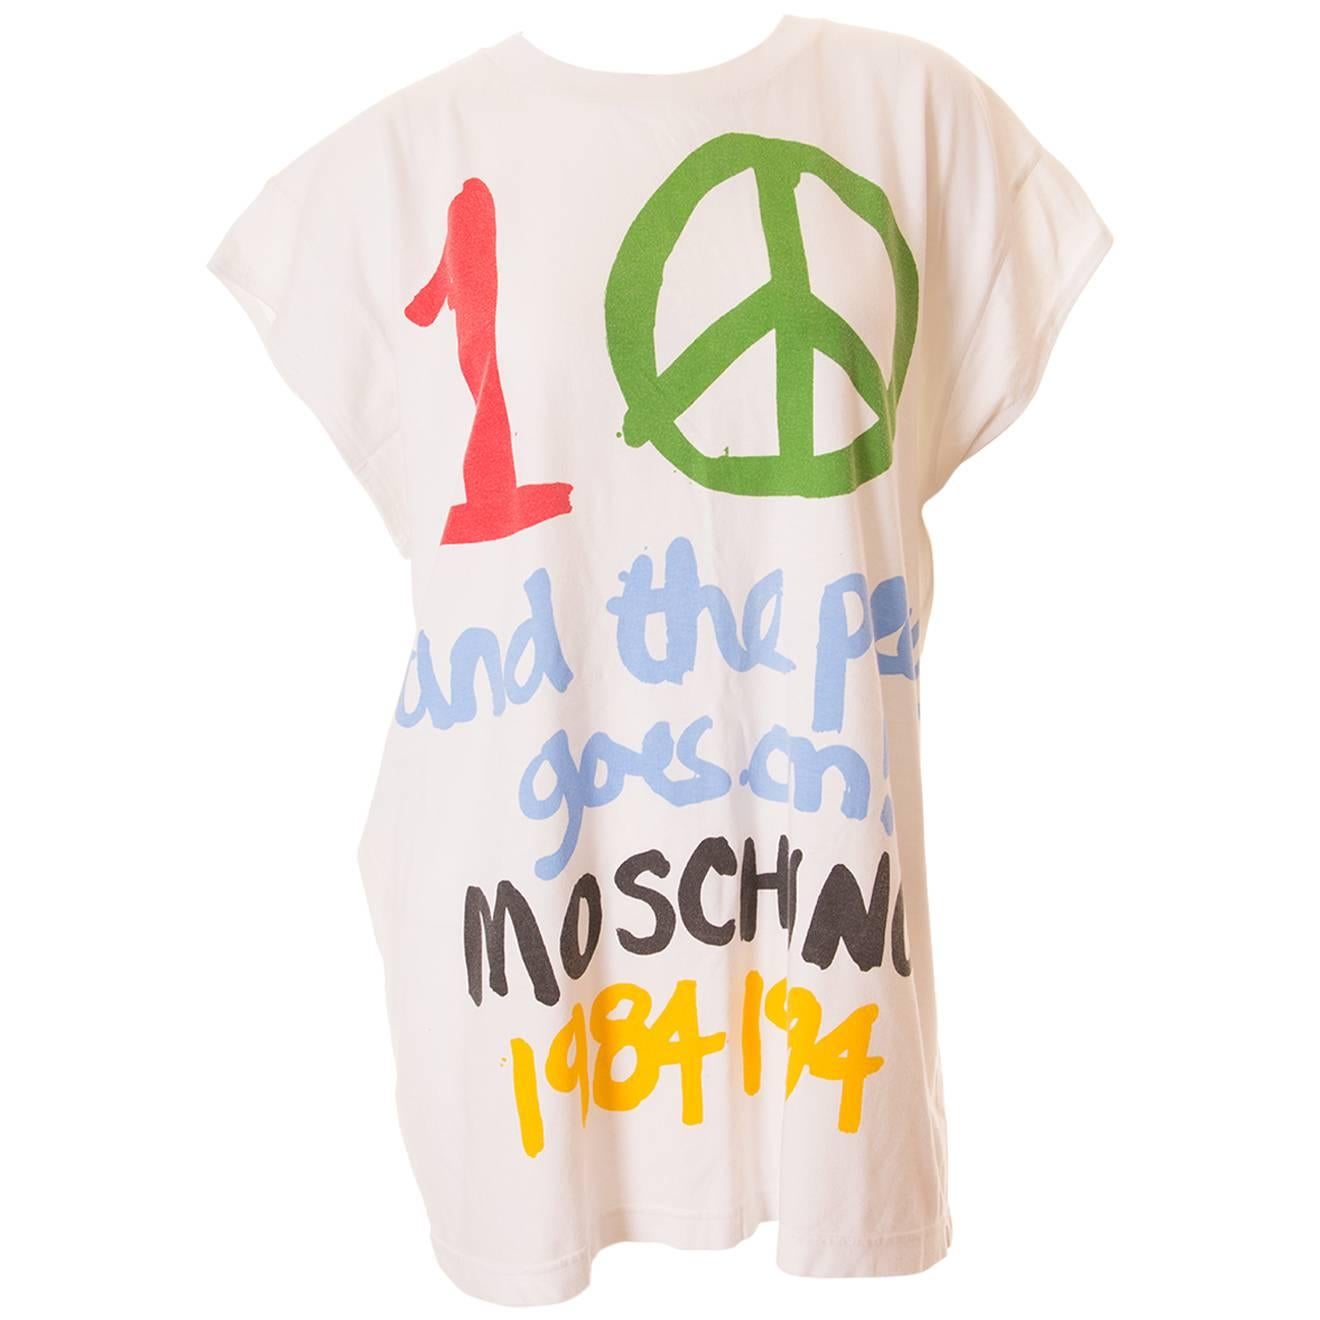 Moschino 10 Year Anniversary Tshirt For Sale